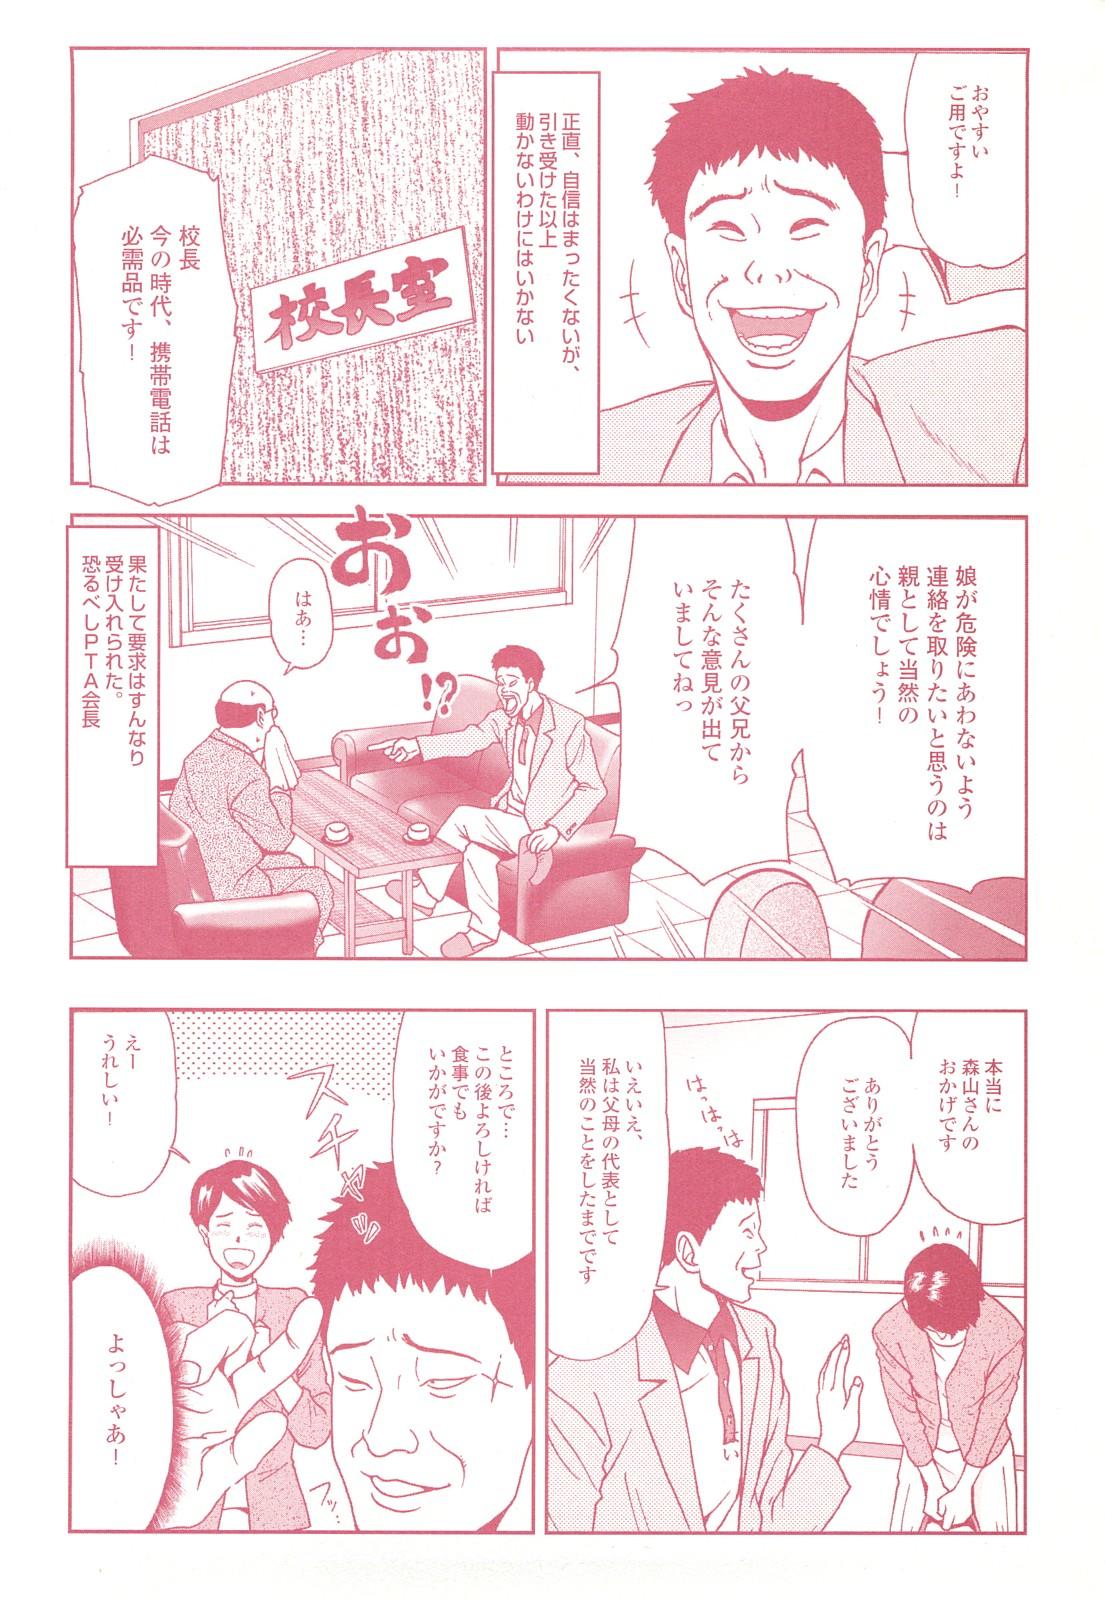 コミック裏モノJAPAN Vol.18 今井のりたつスペシャル号 117